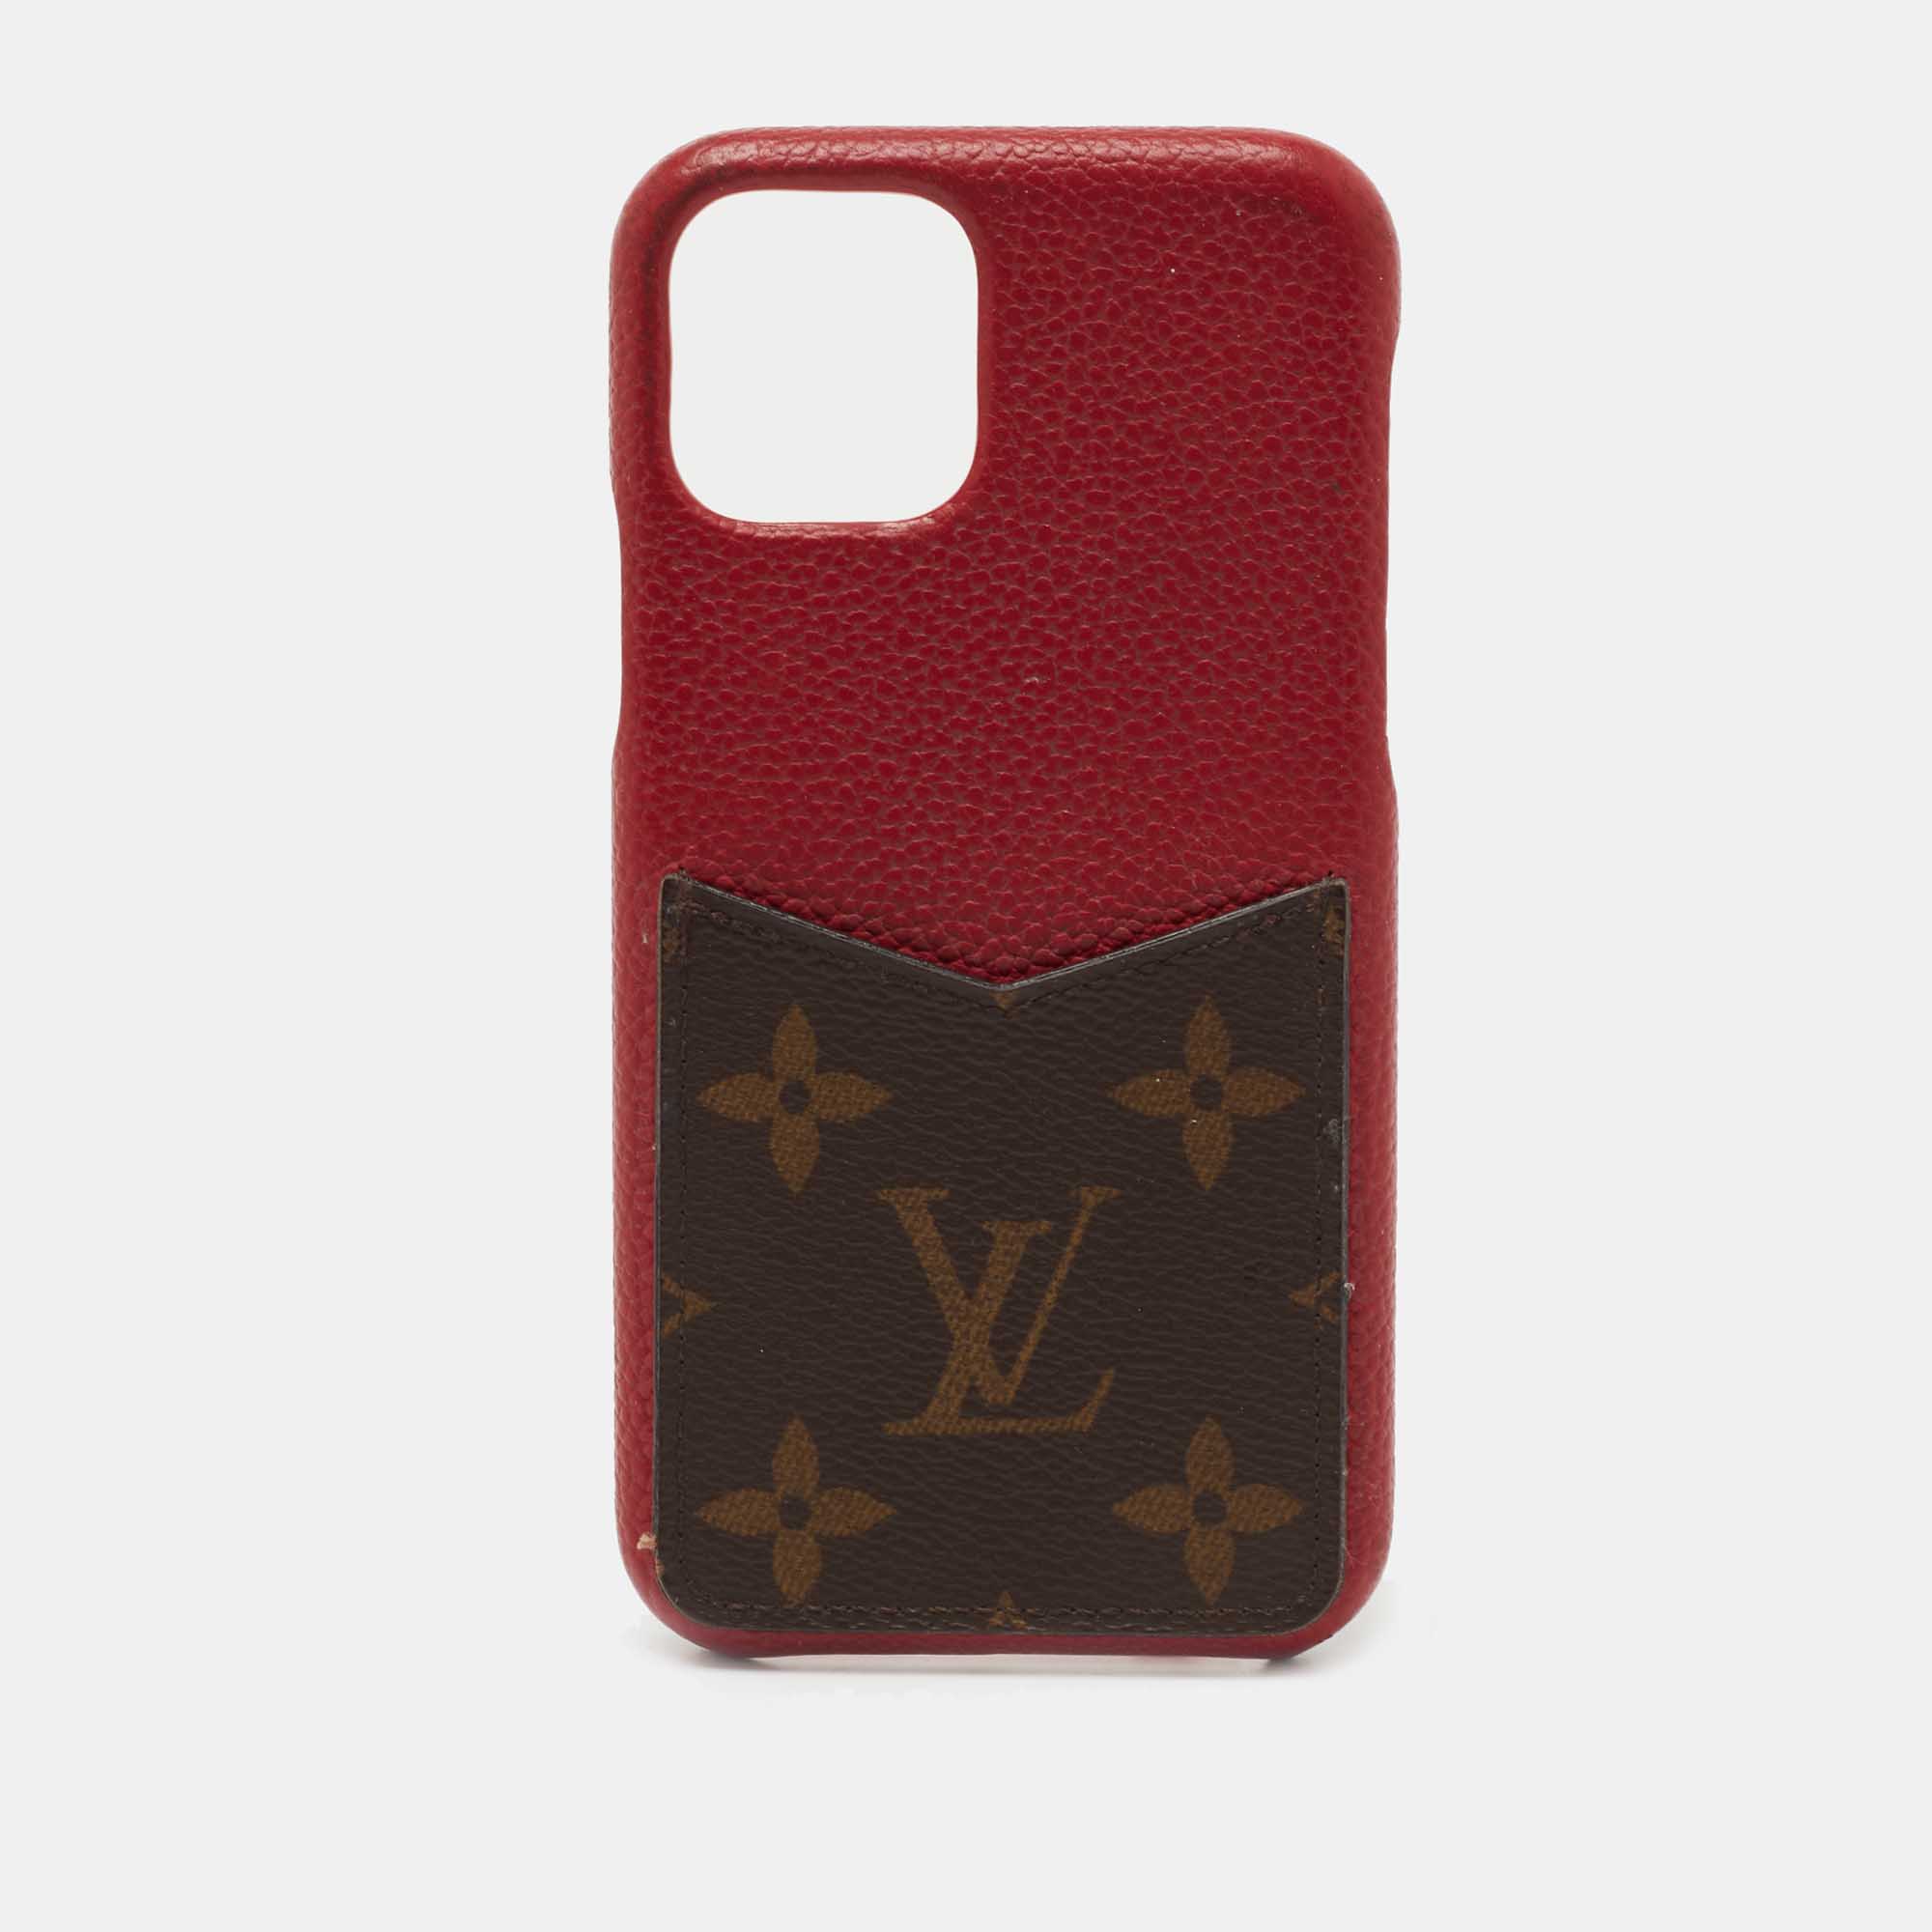 Louis Vuitton, Accessories, Authentic Louis Vuitton Cell Phone Case